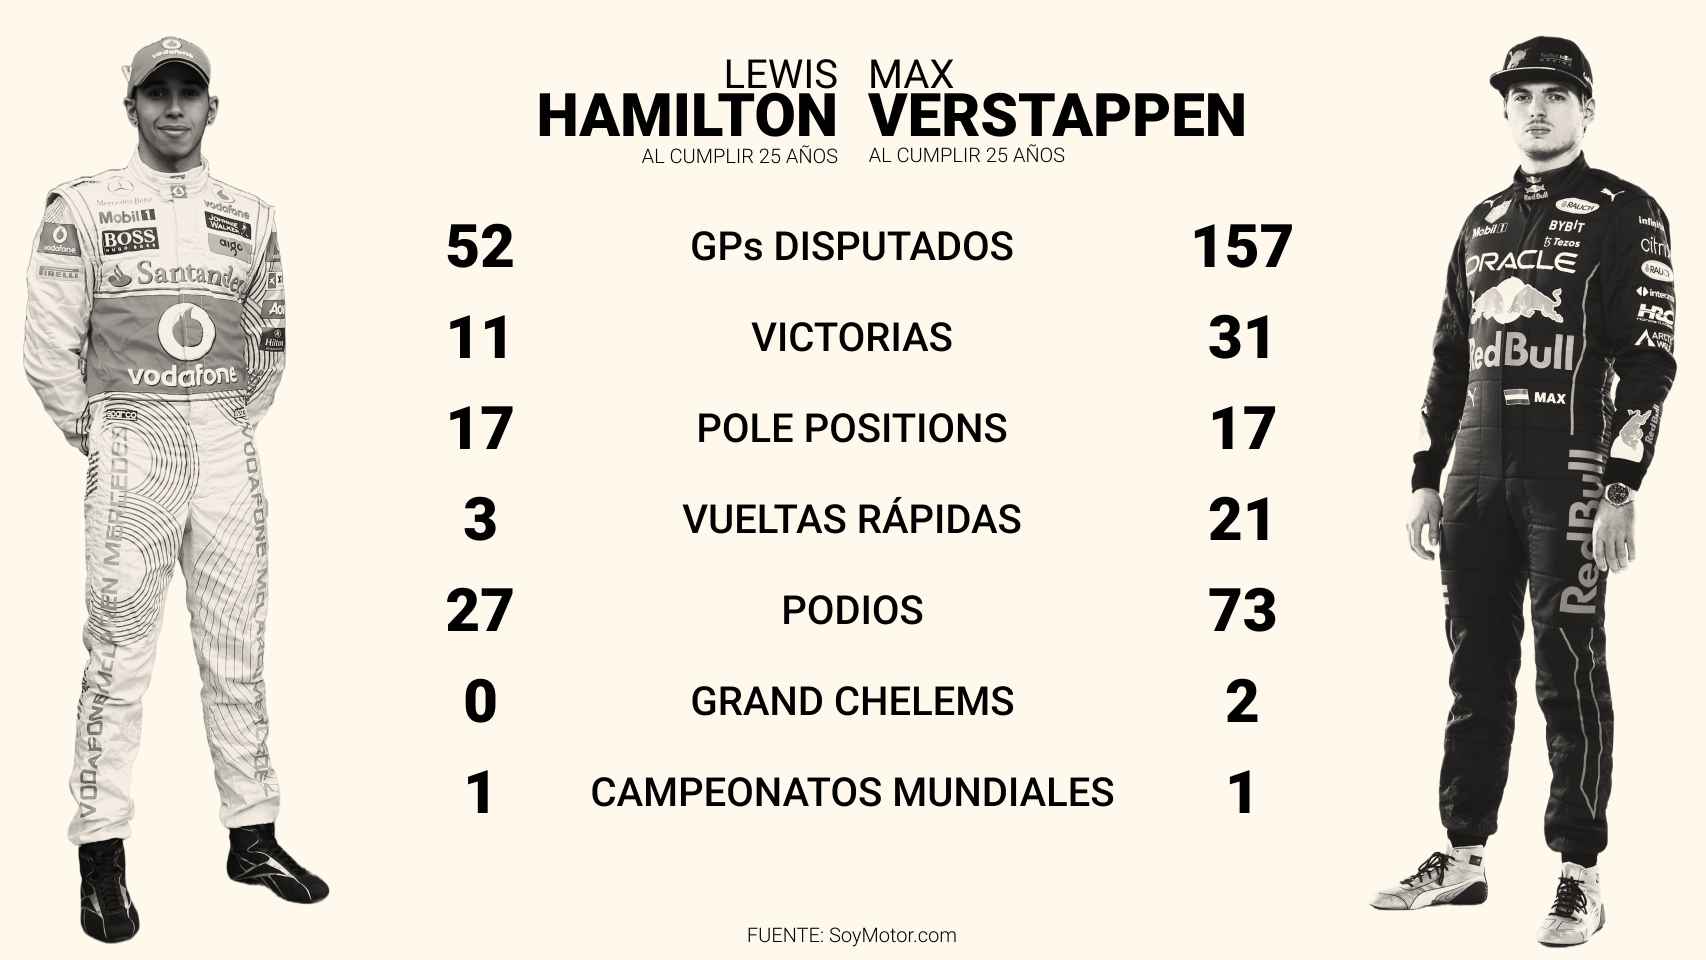 Comparativa entre las carreras de Hamilton y Verstappen a los 25 años